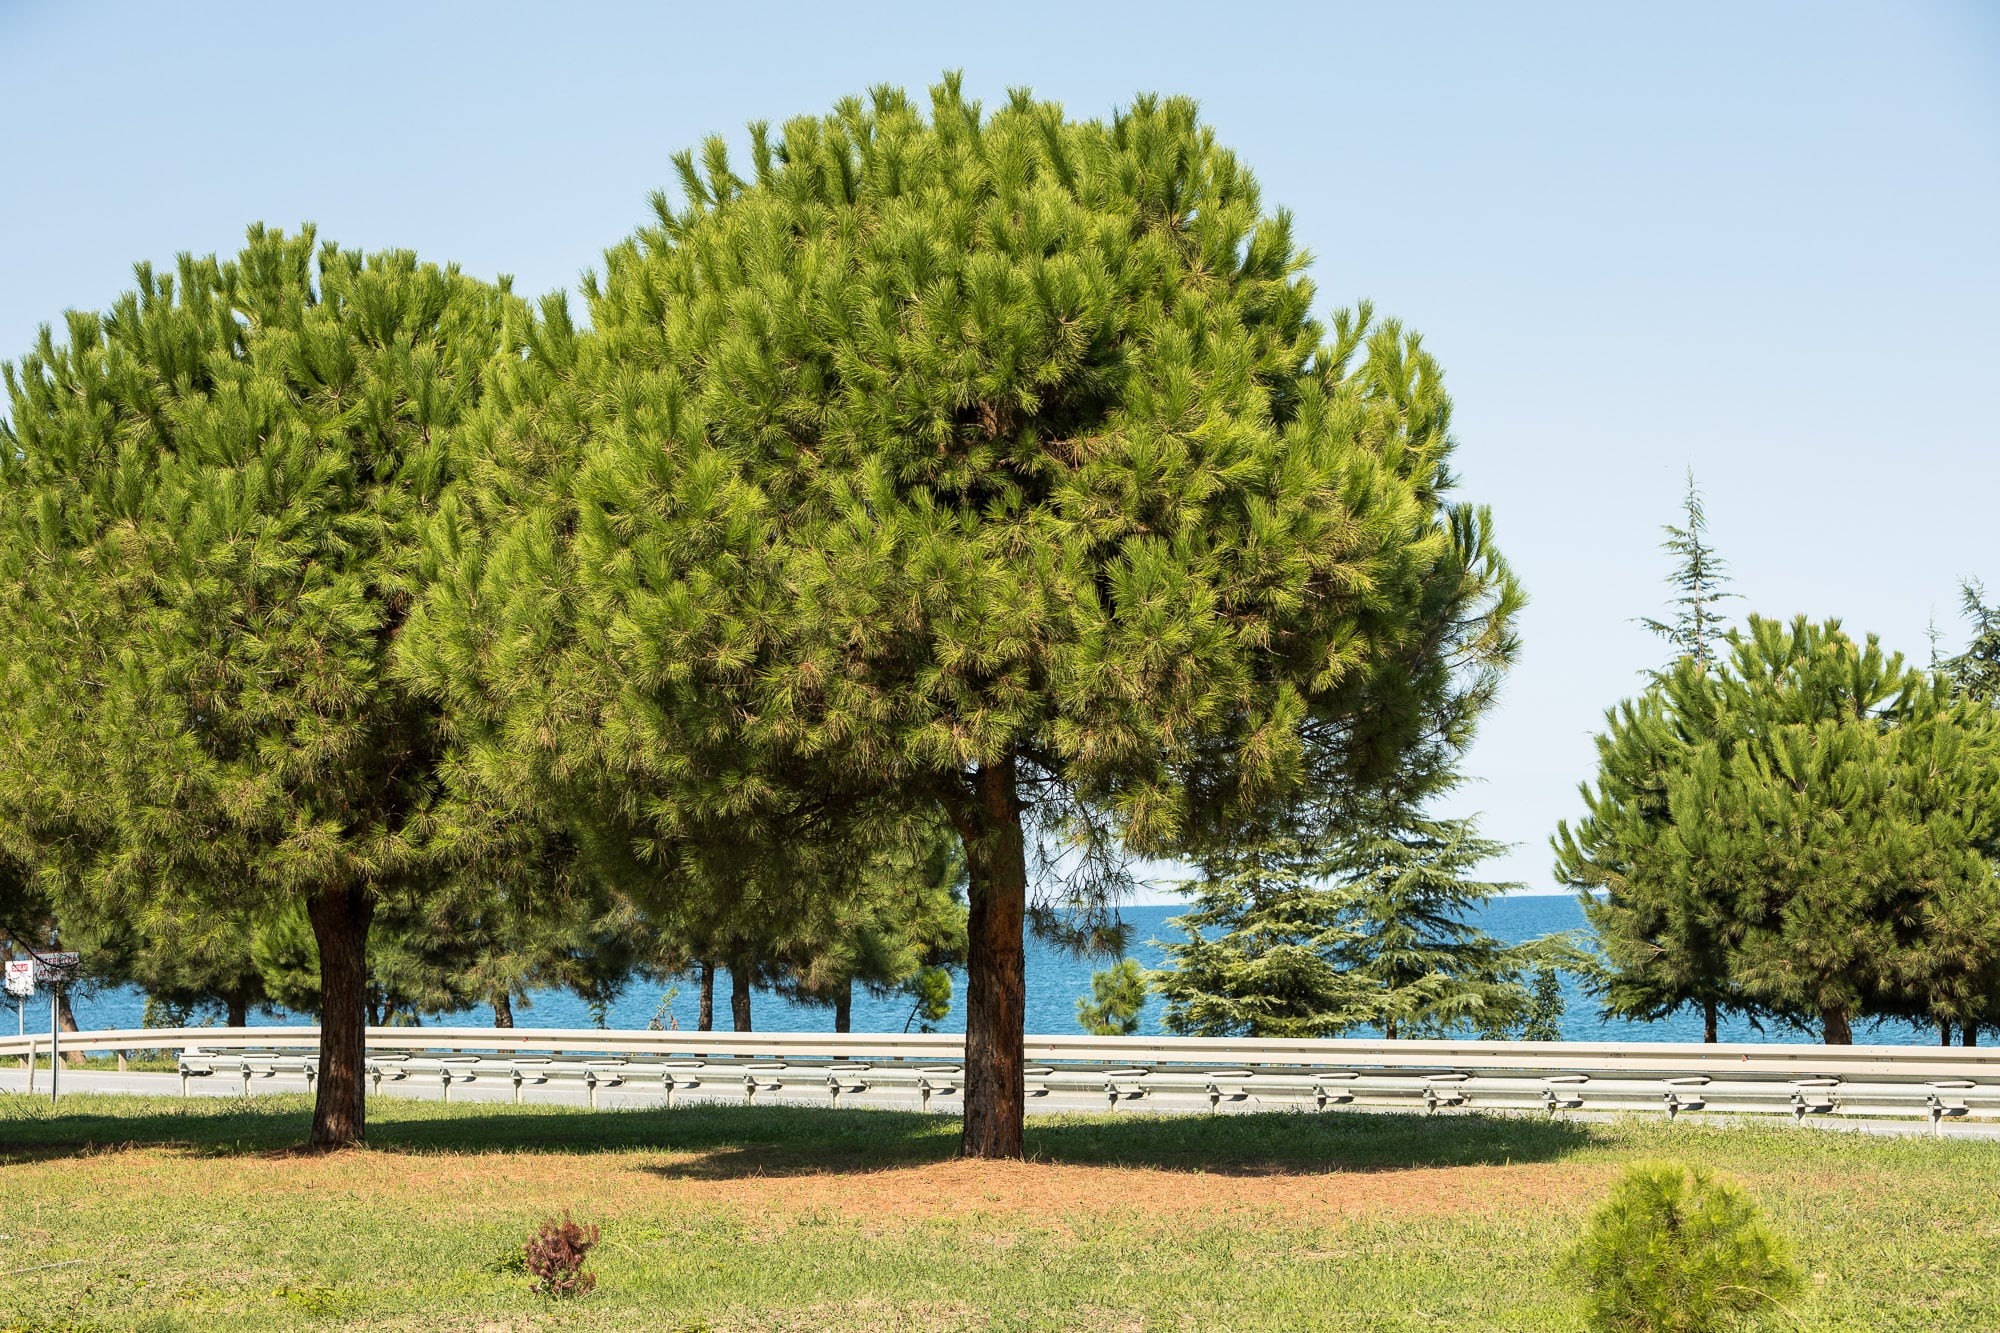 pine trees